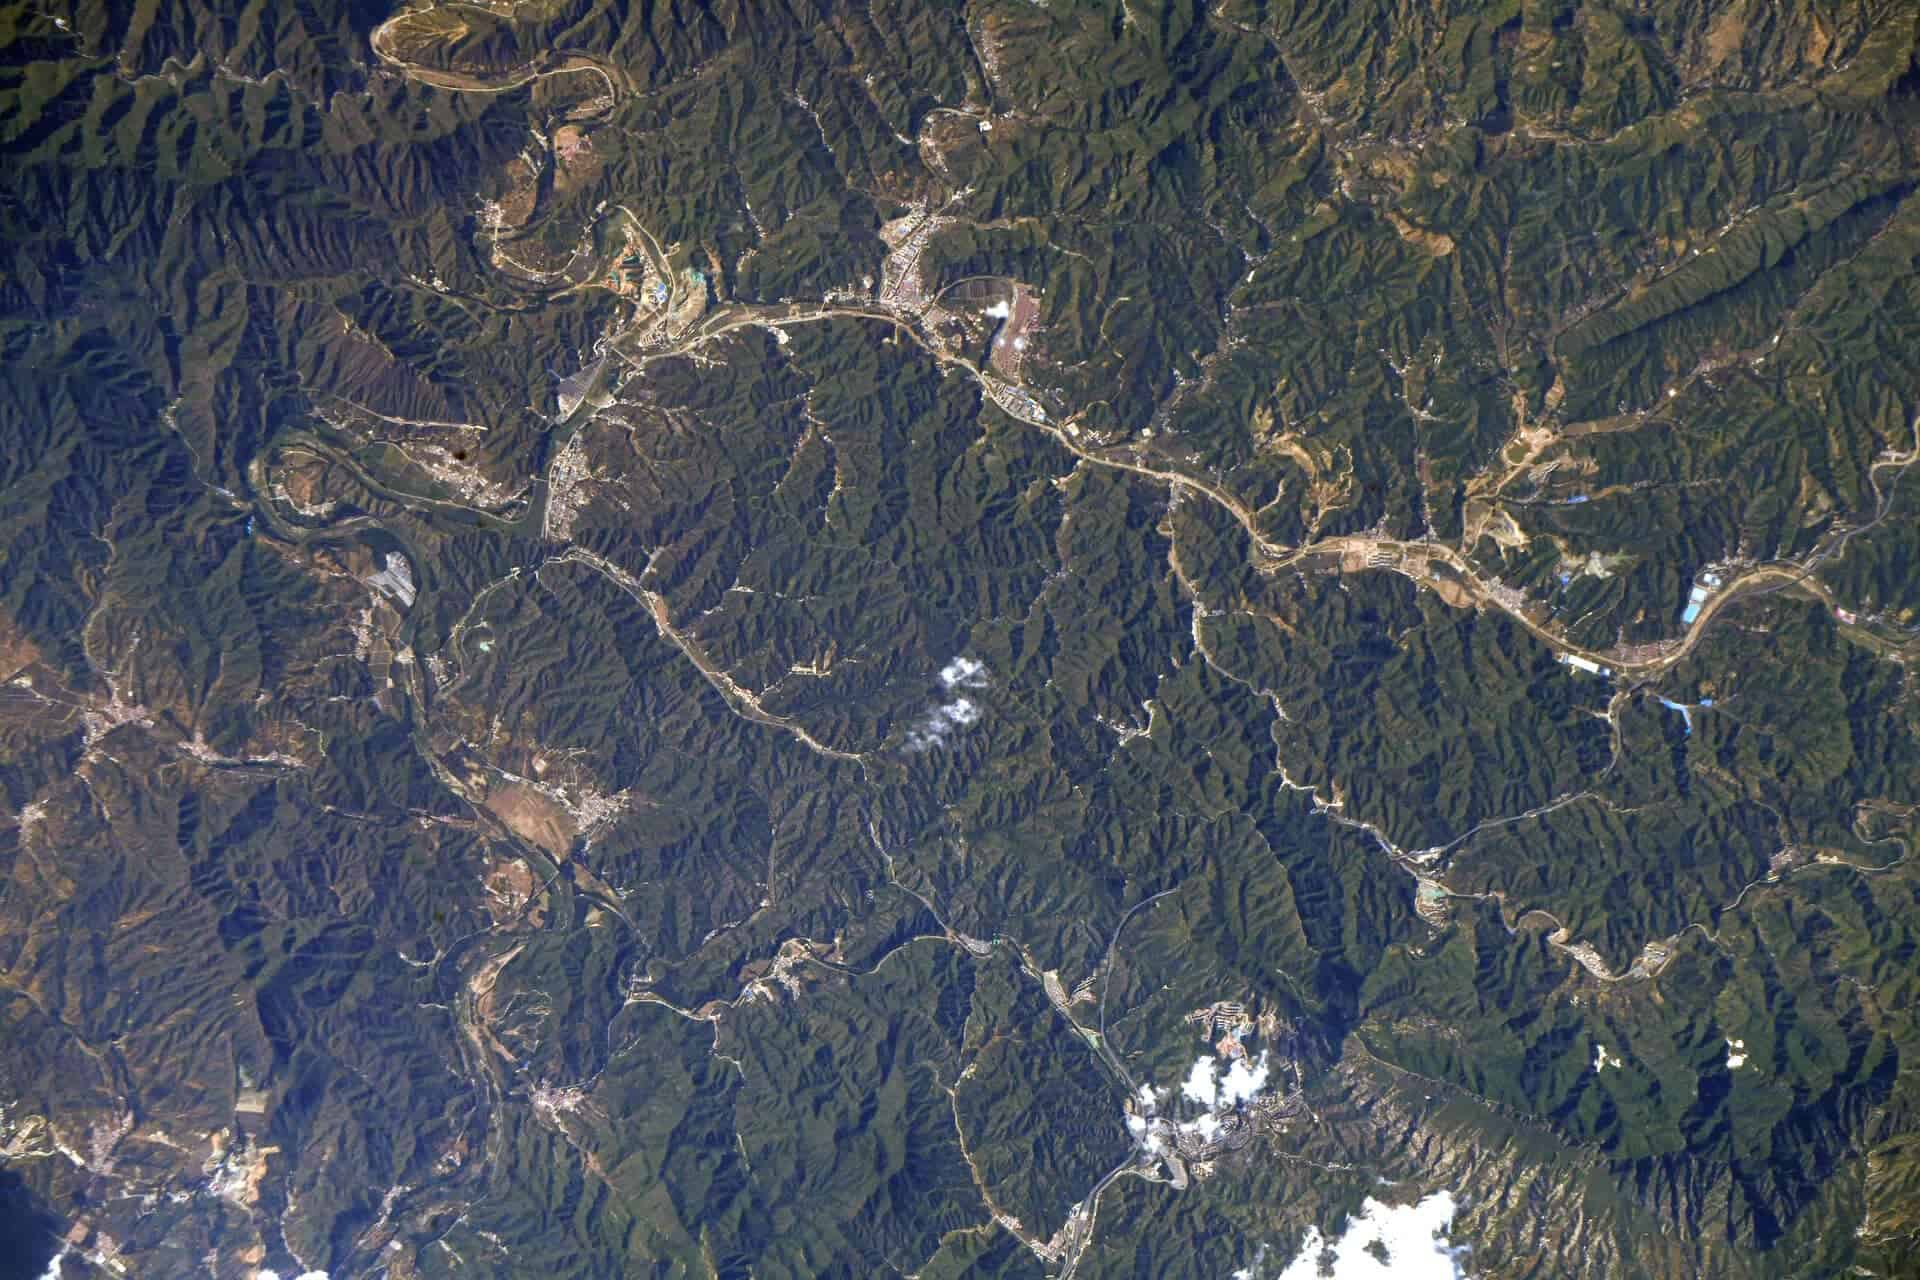 عکس دیوار بزرگ چین از فضا | دیوار بزرگ چین از فضا با ابزار قابل مشاهده است.